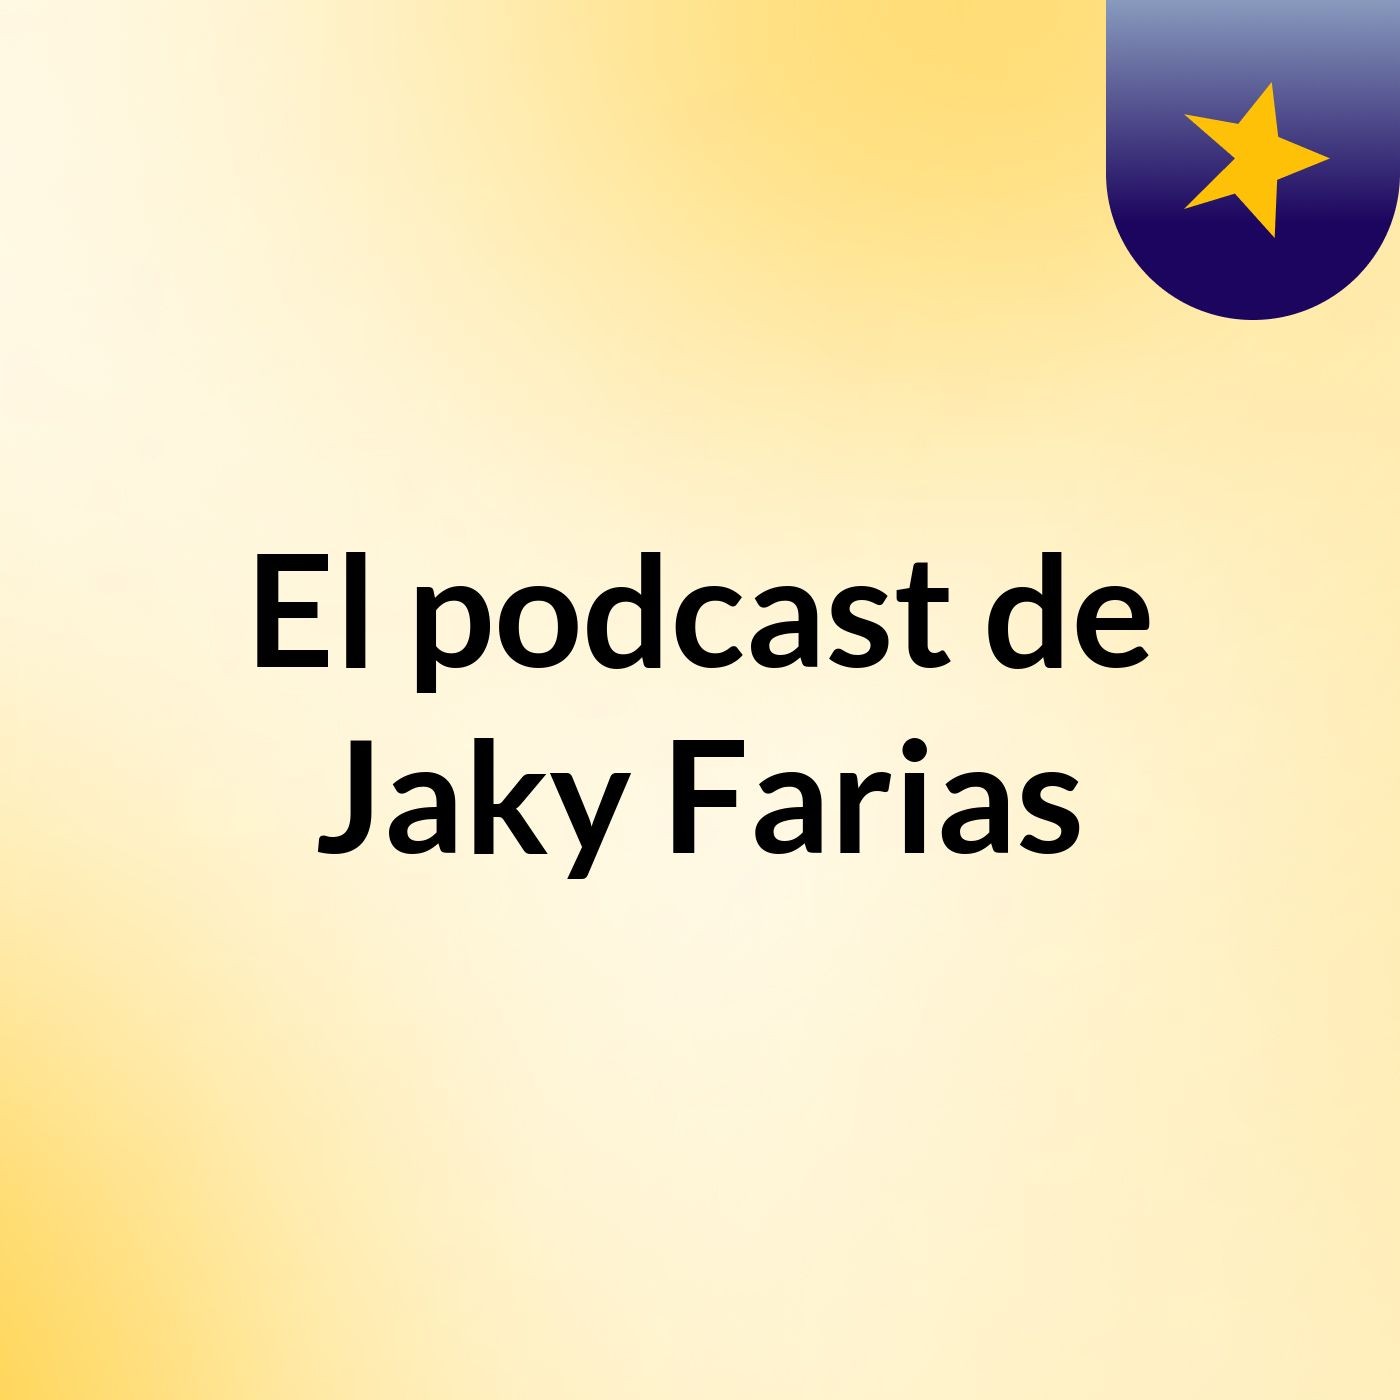 El podcast de Jaky Farias